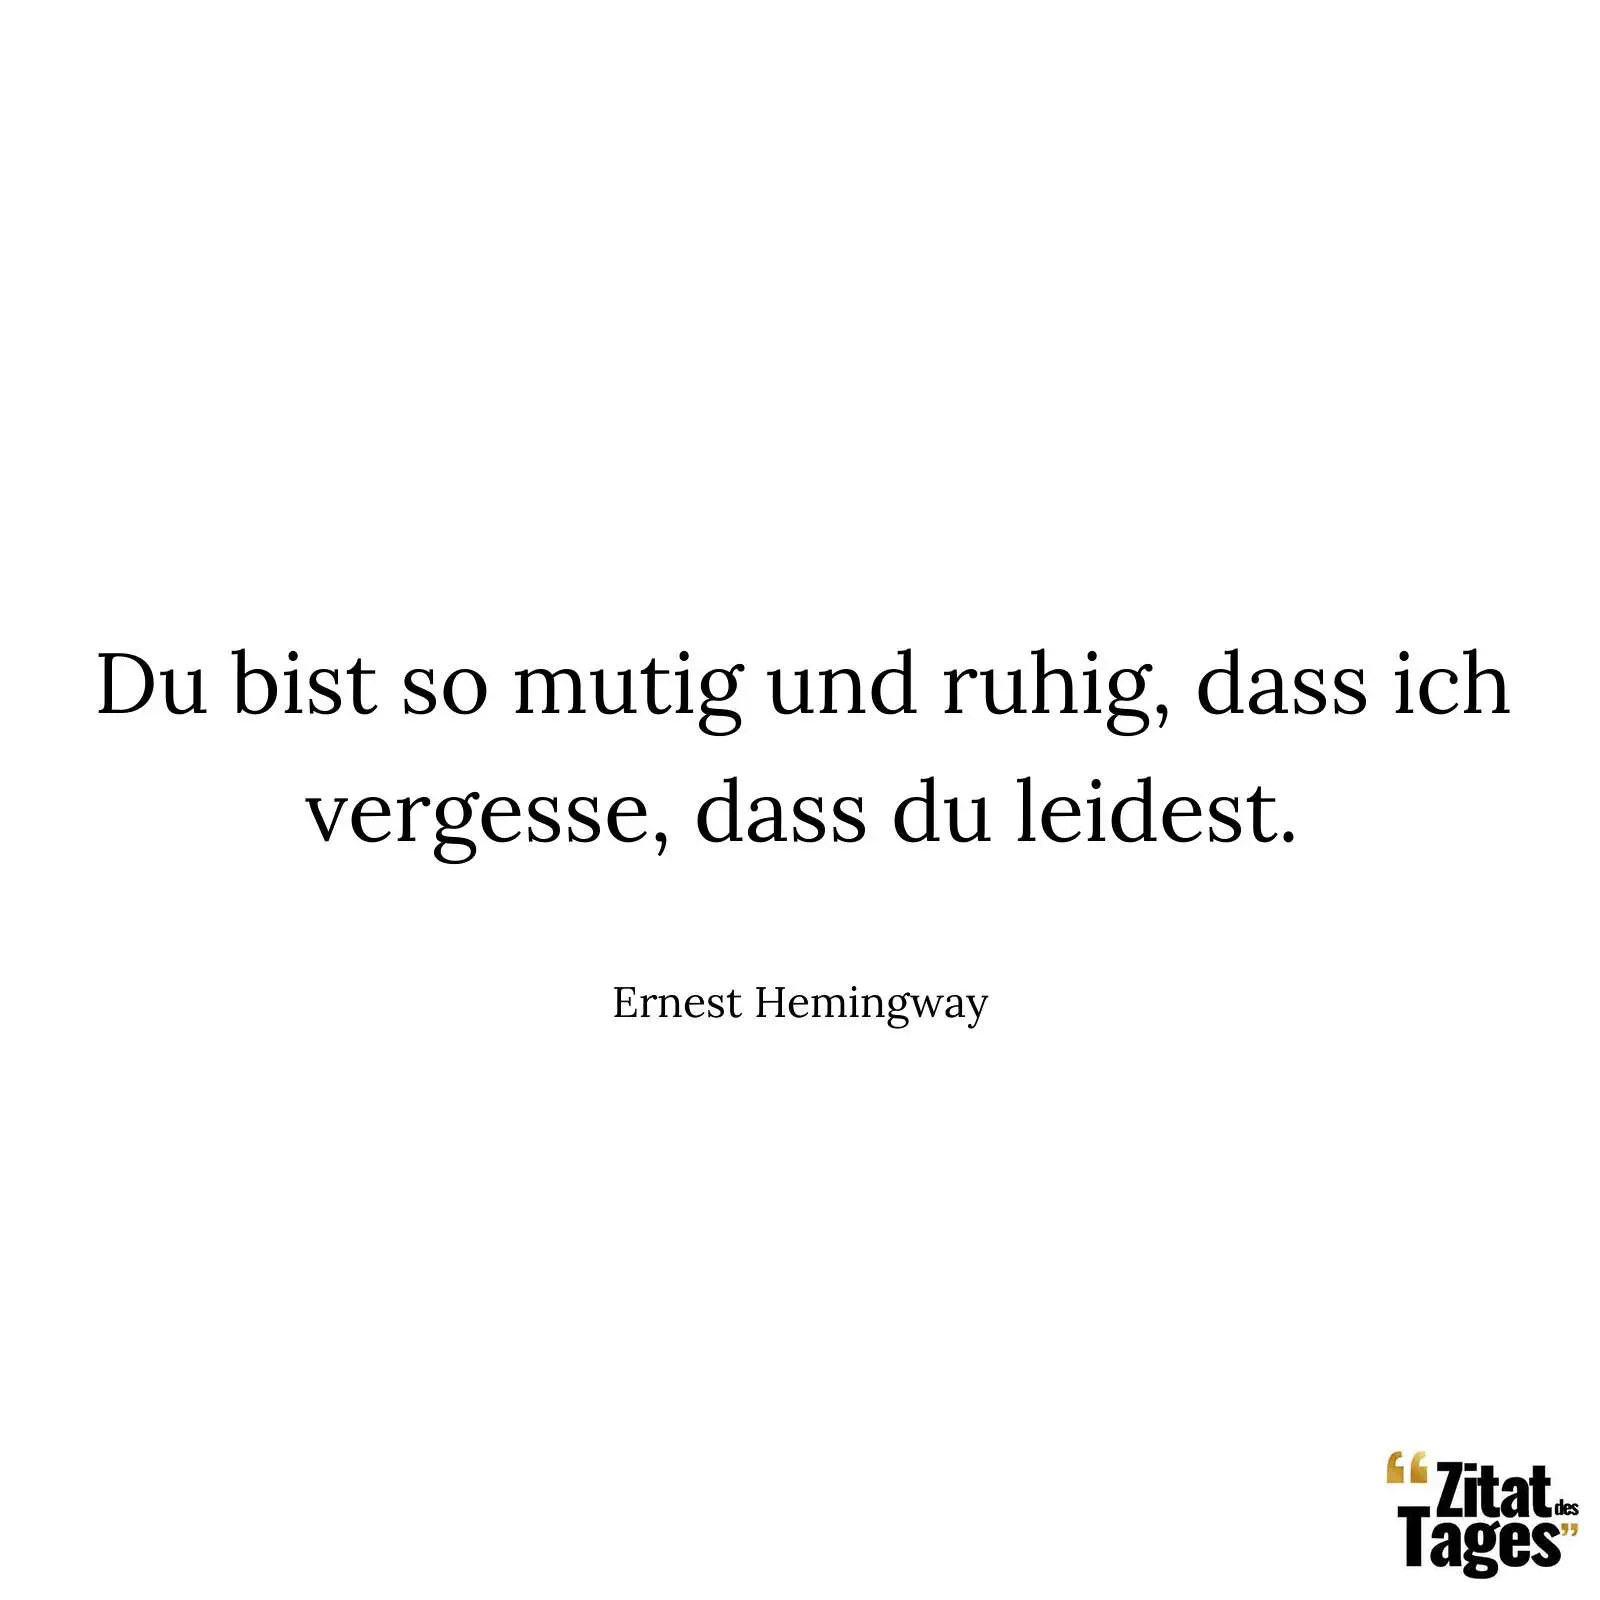 Du bist so mutig und ruhig, dass ich vergesse, dass du leidest. - Ernest Hemingway